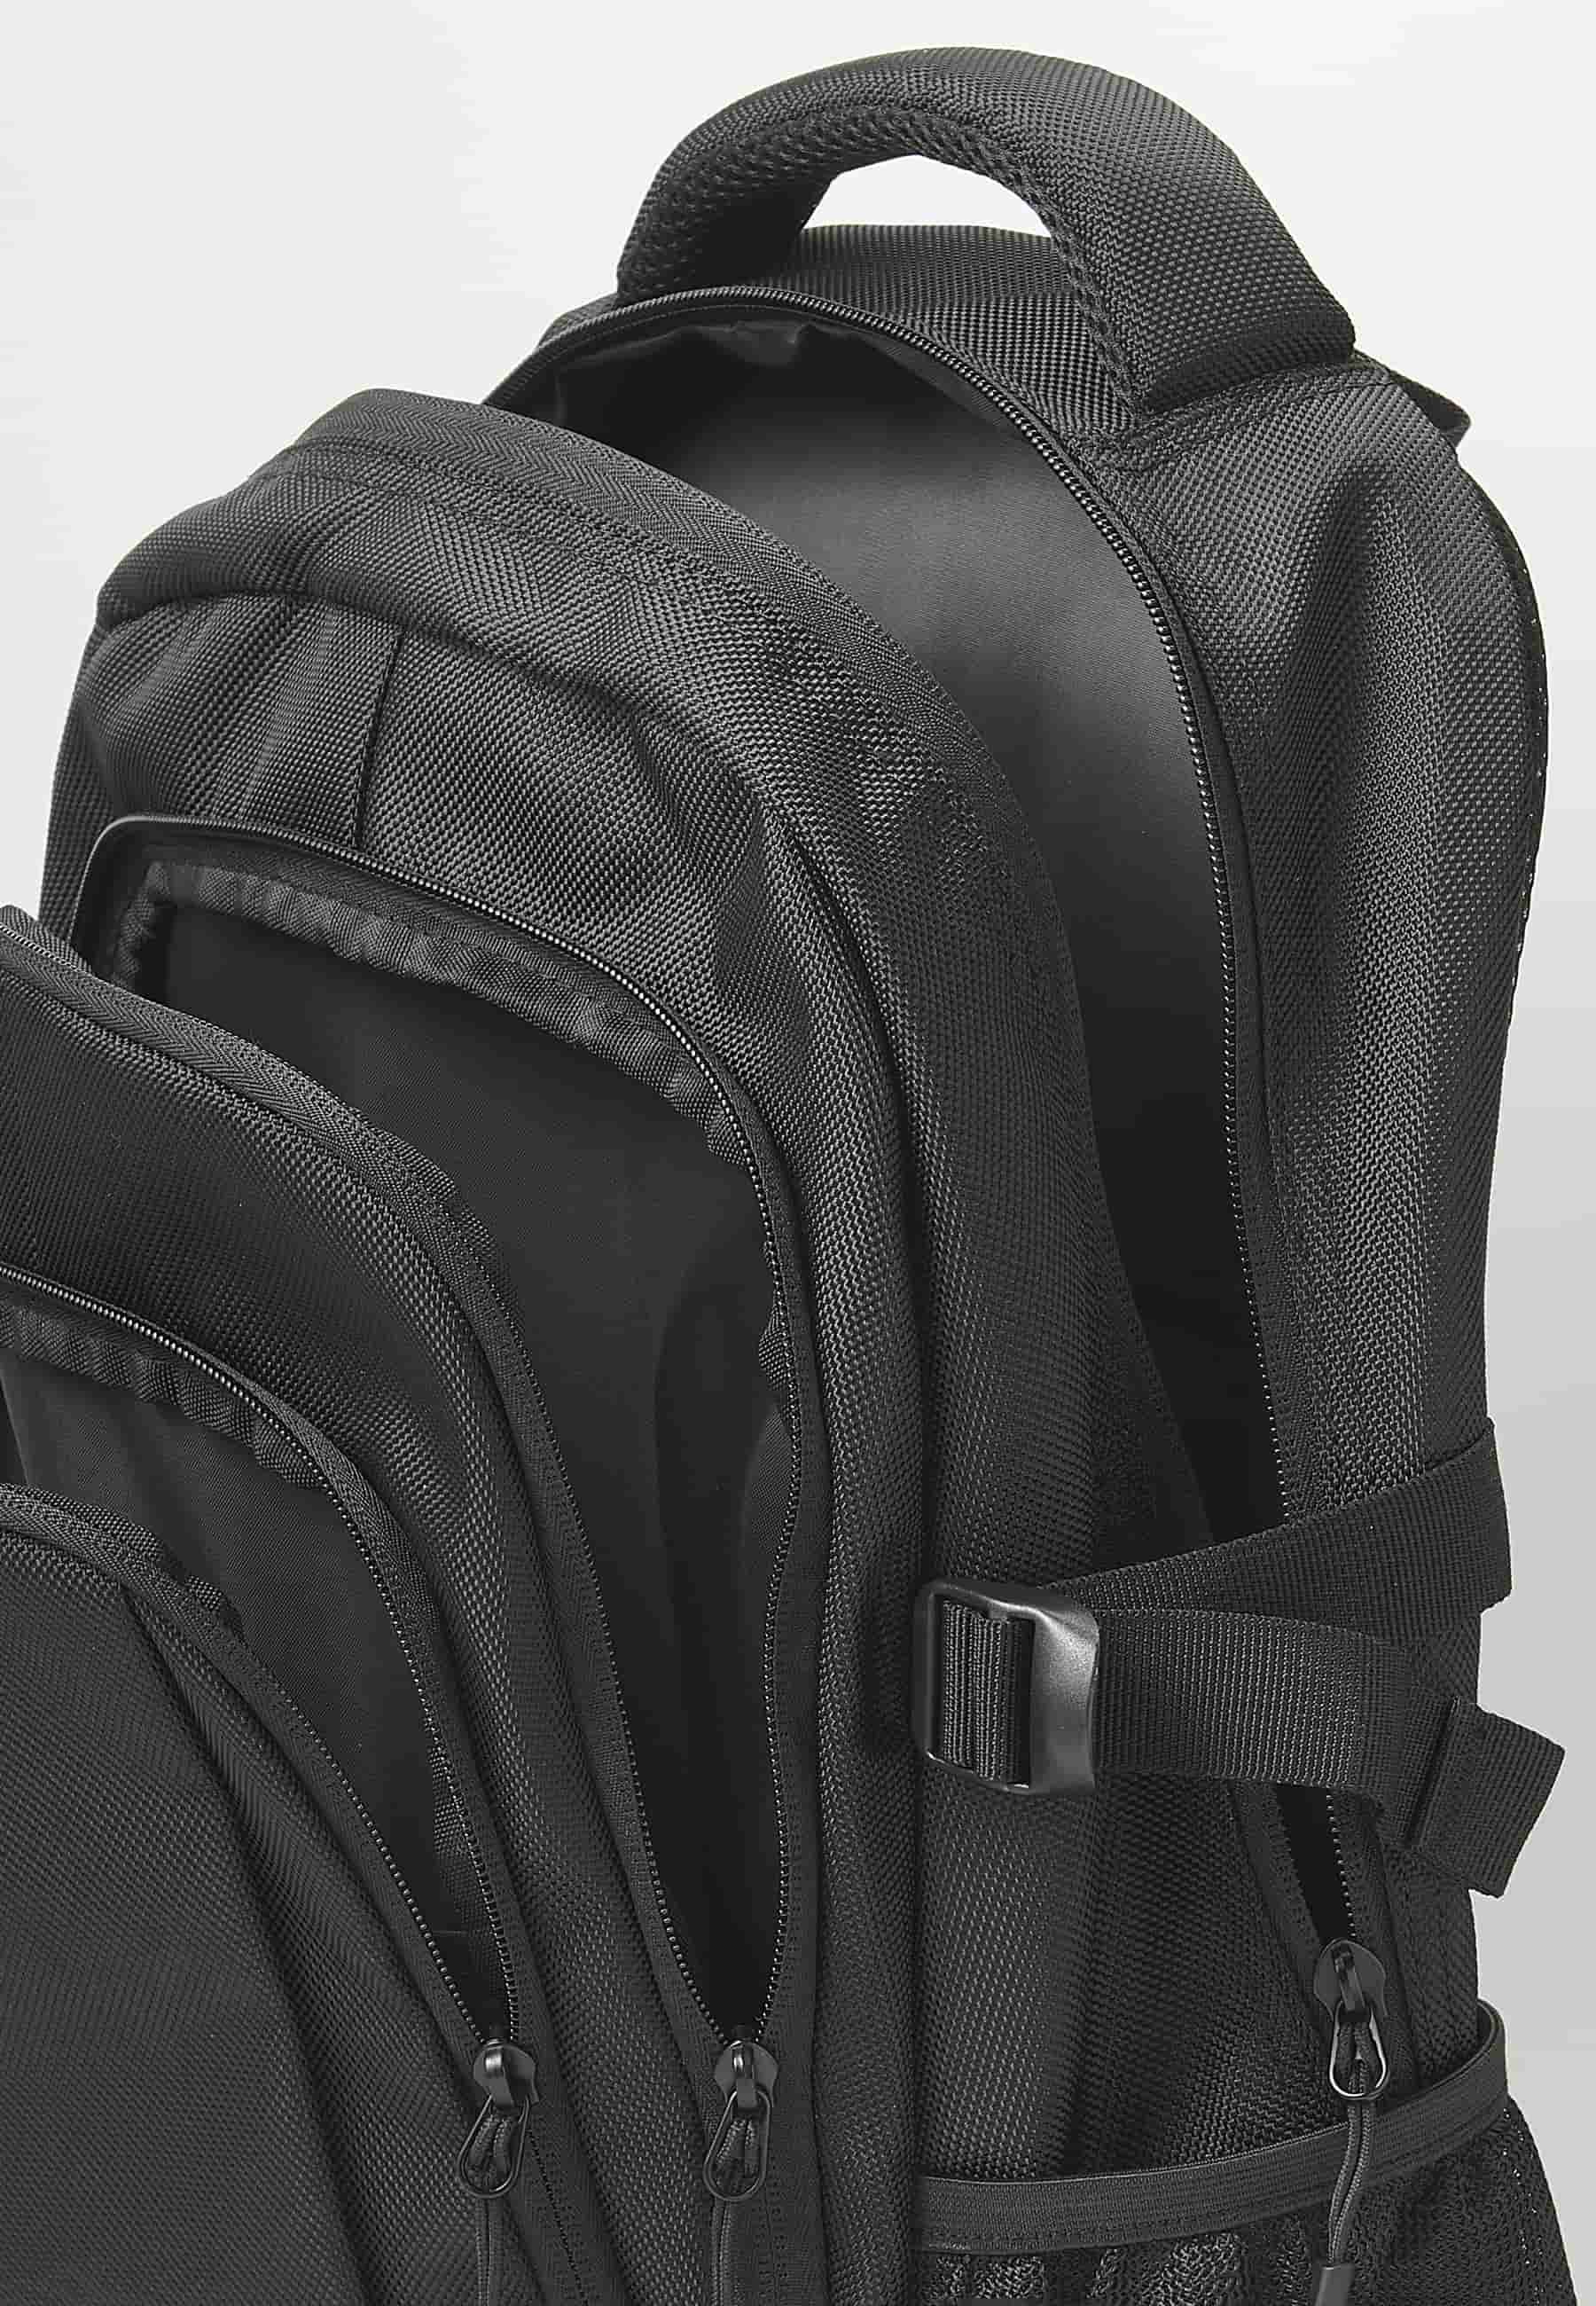 Koröshi-Rucksack mit drei Reißverschlussfächern, eines für einen Laptop, und schwarzen Innentaschen